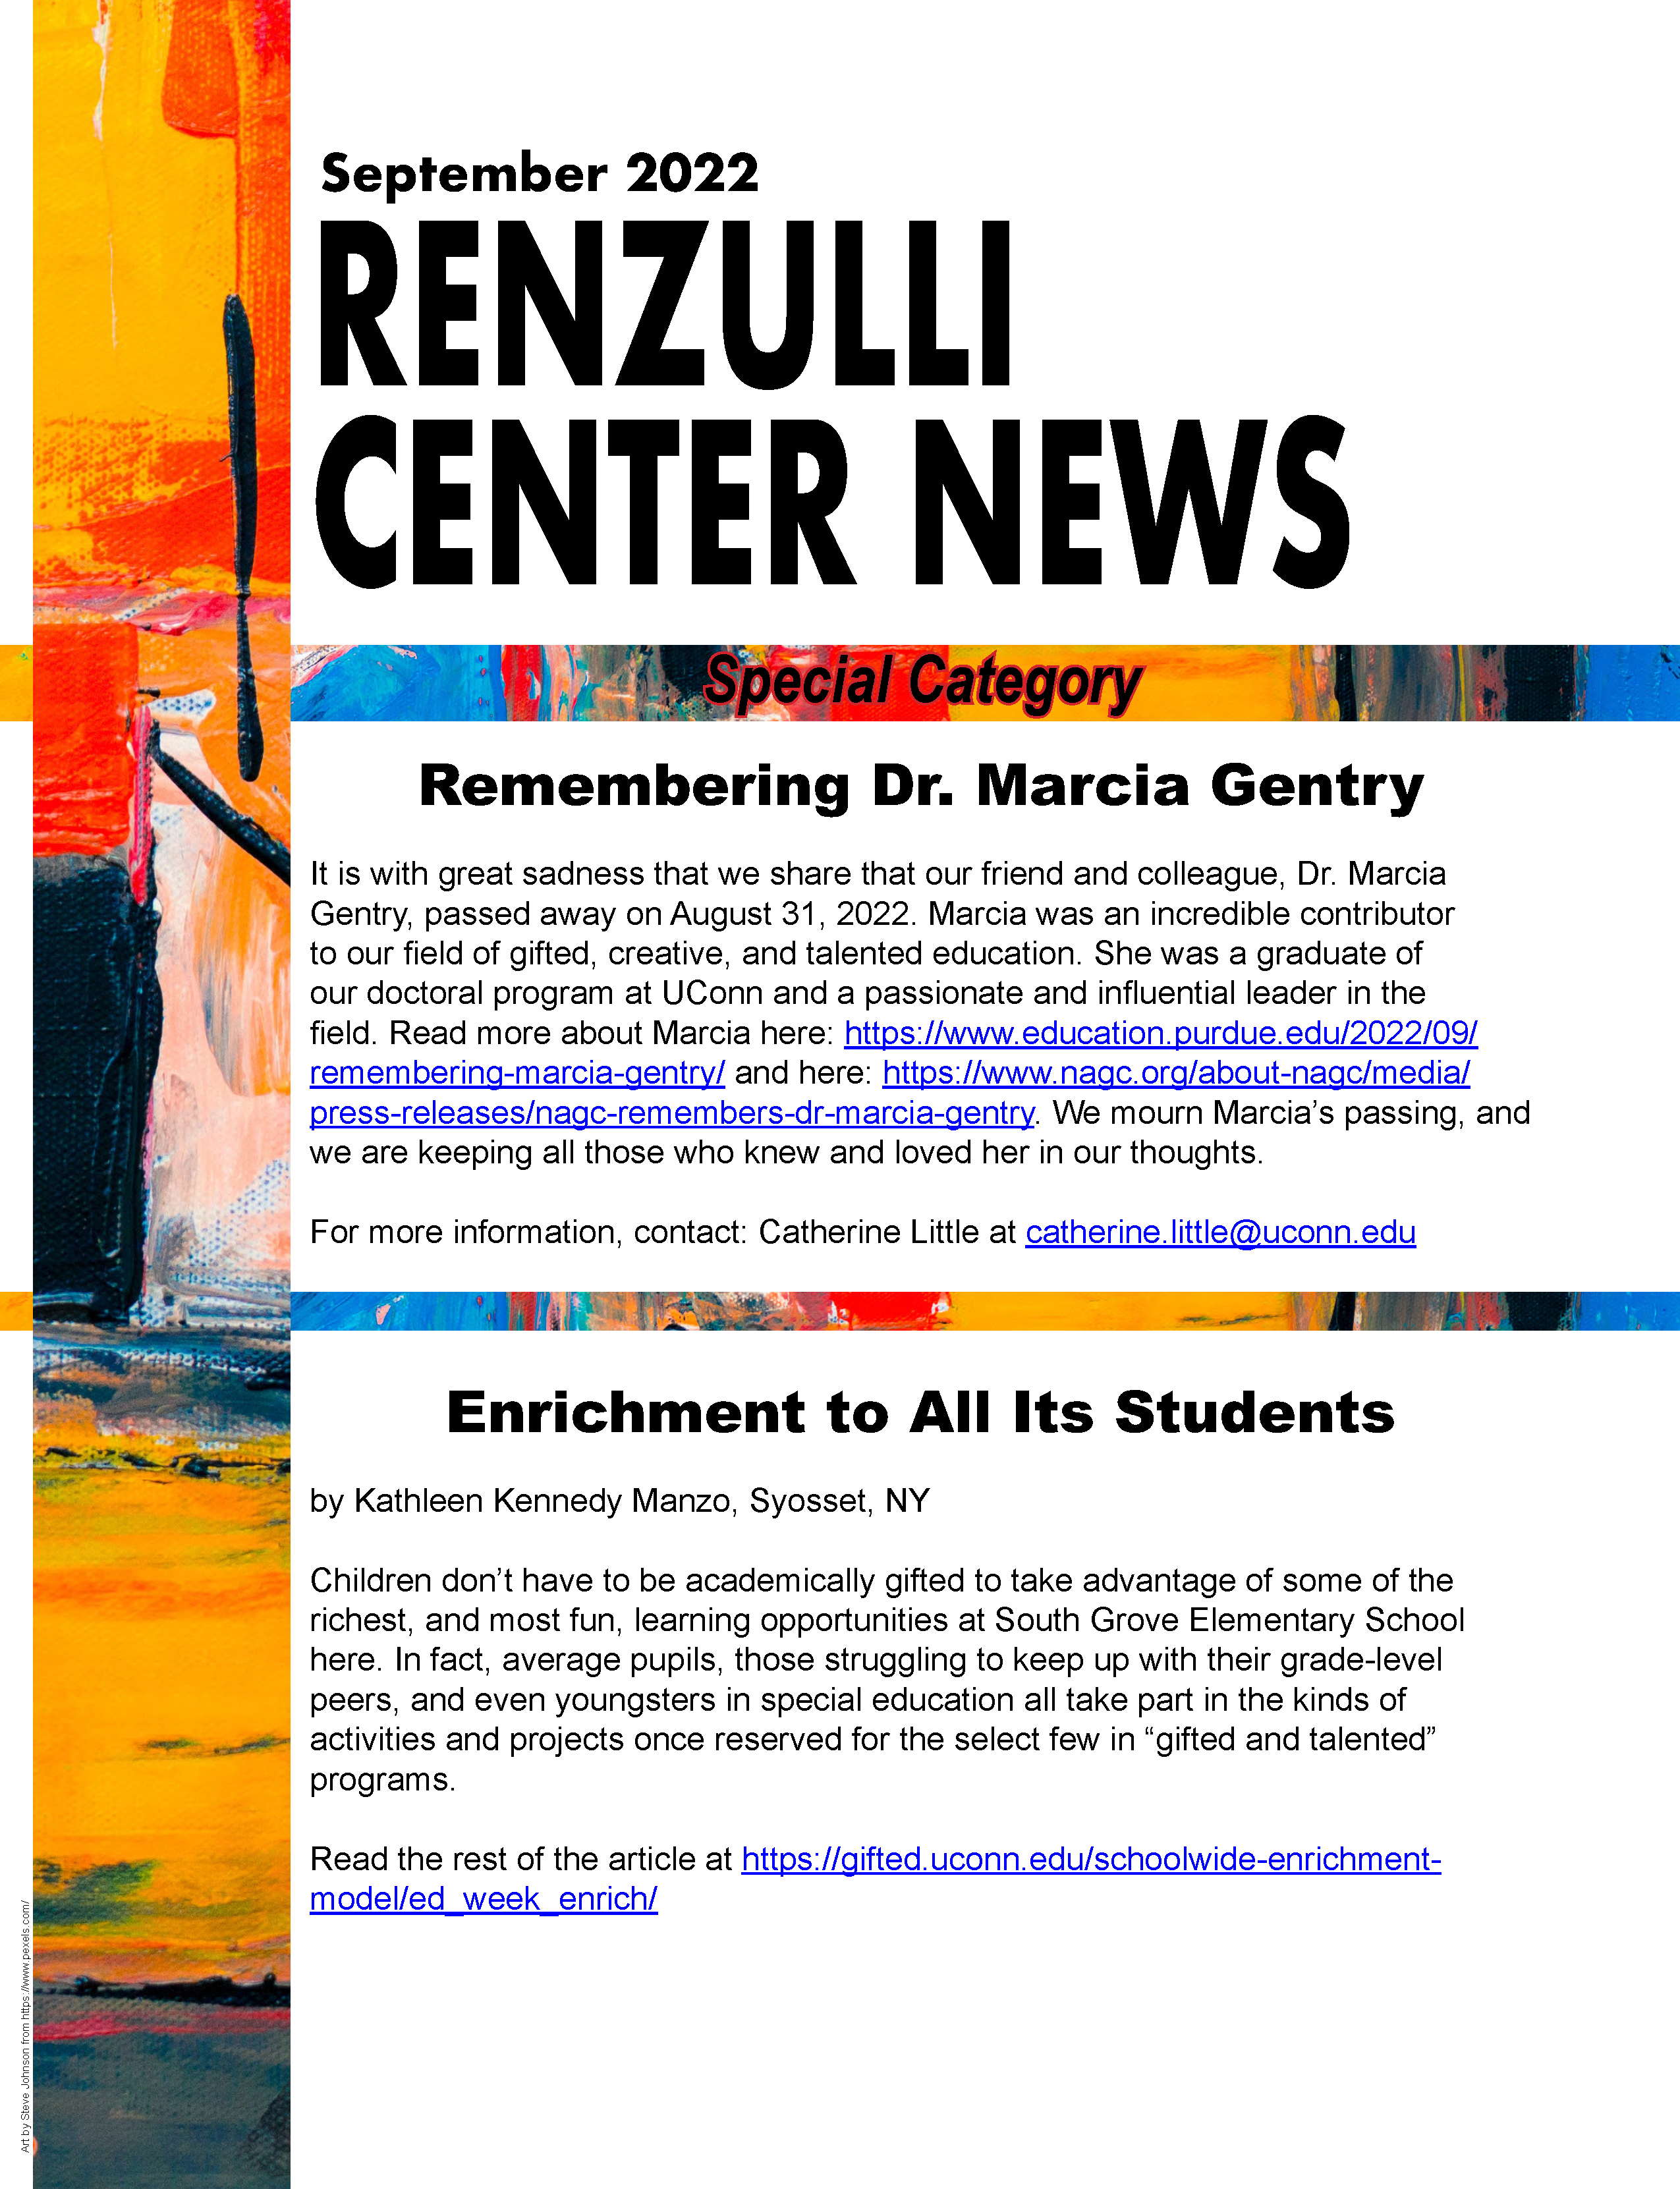 September 2022 Renzulli News Cover Graphic